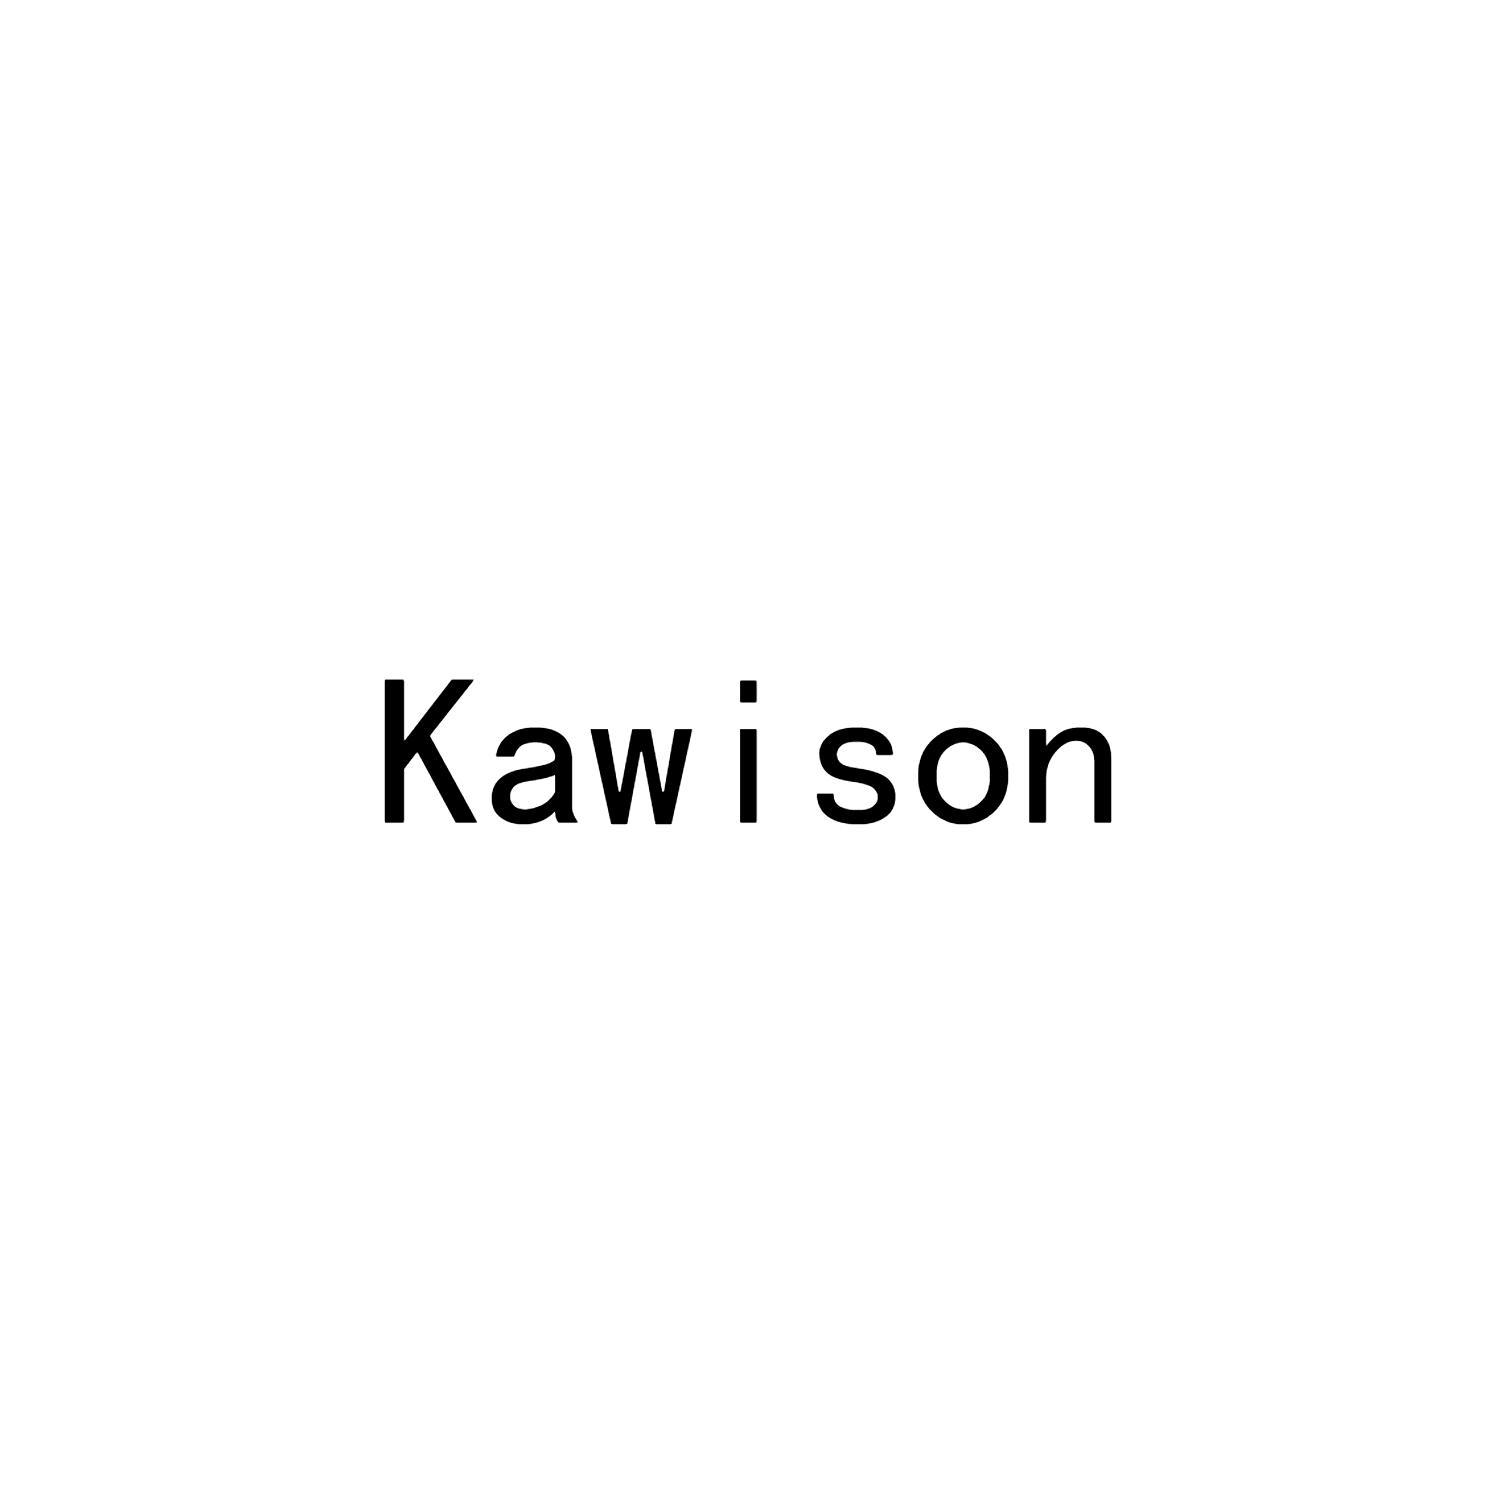 KAWISON